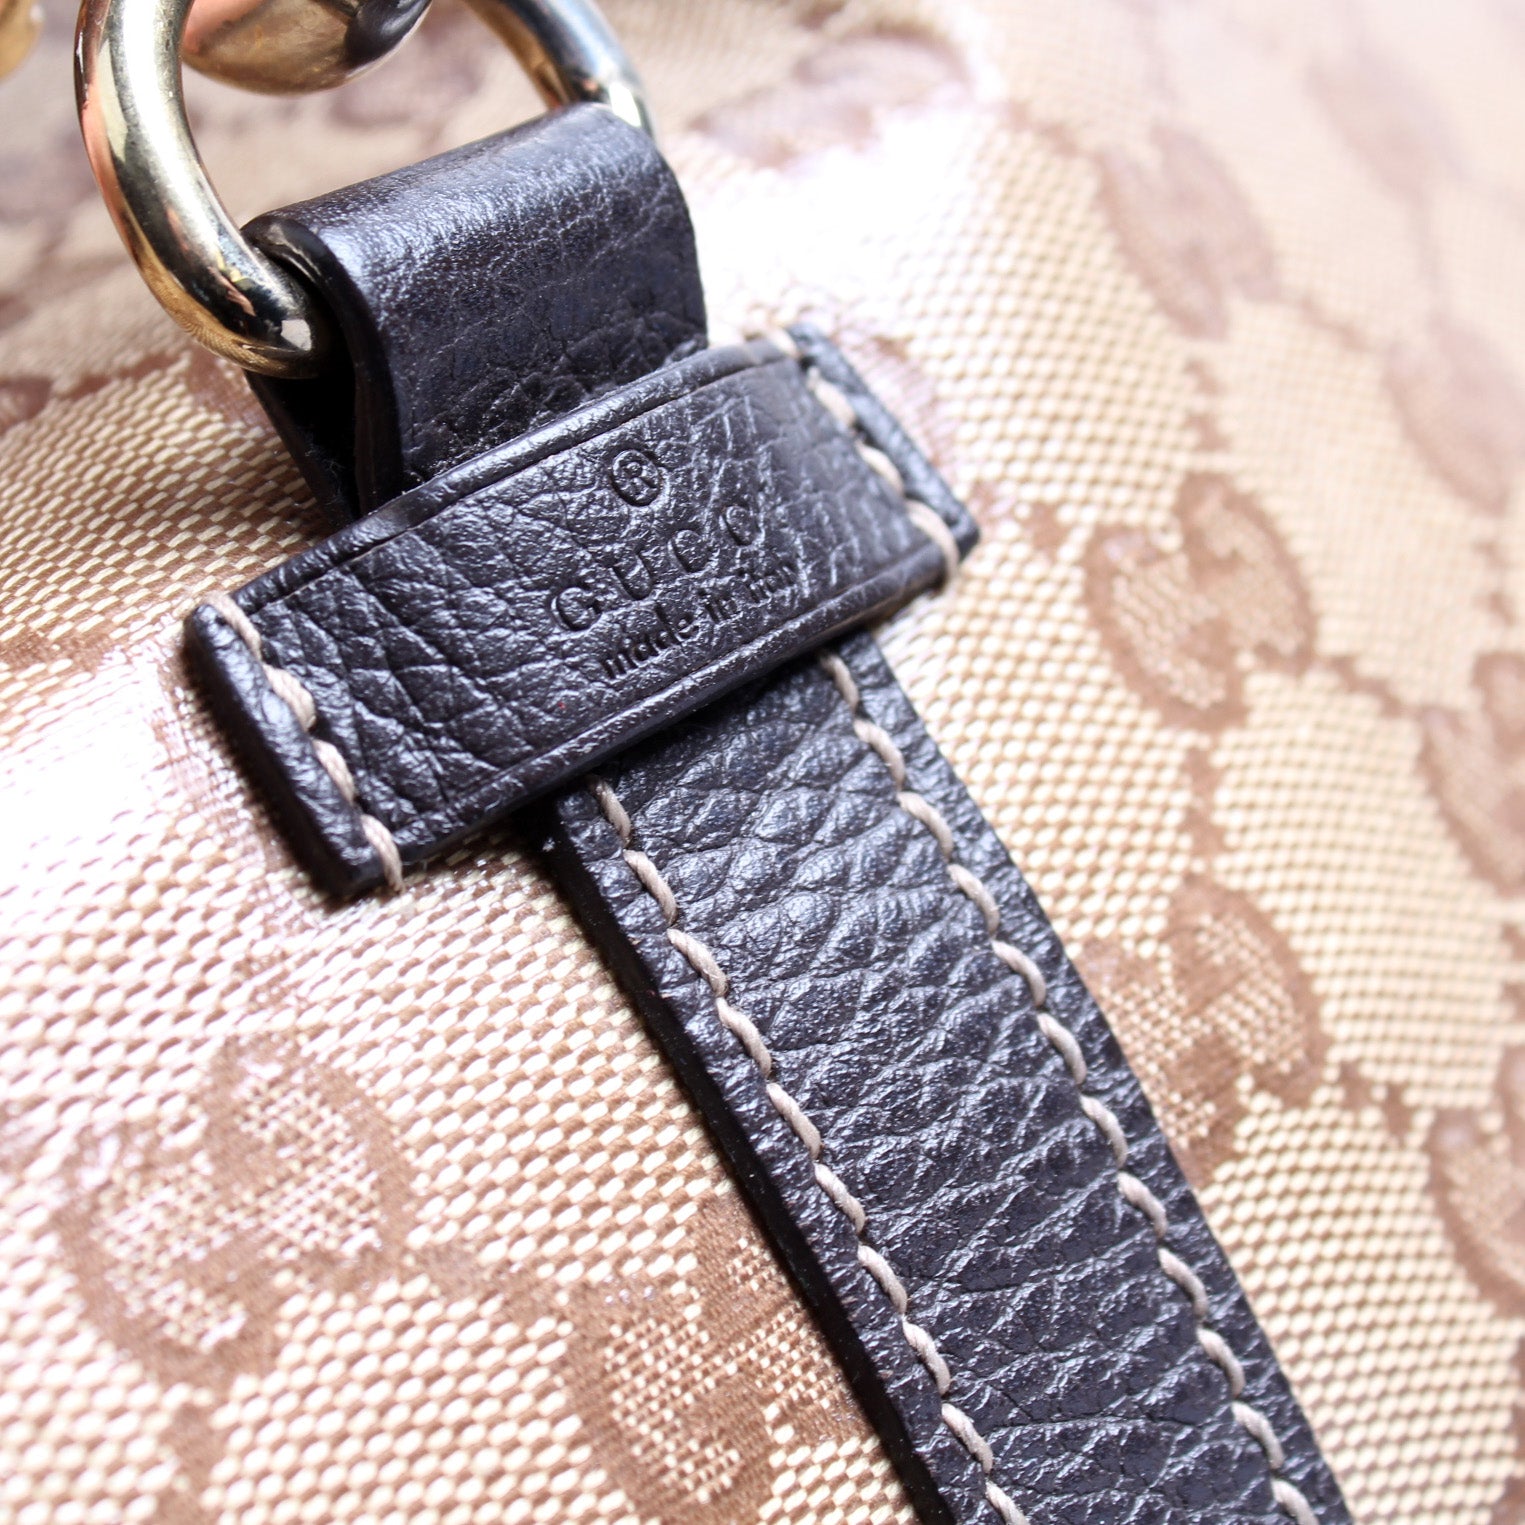 265699 Crystal GG Medium Joy Shoulder Bag – Keeks Designer Handbags